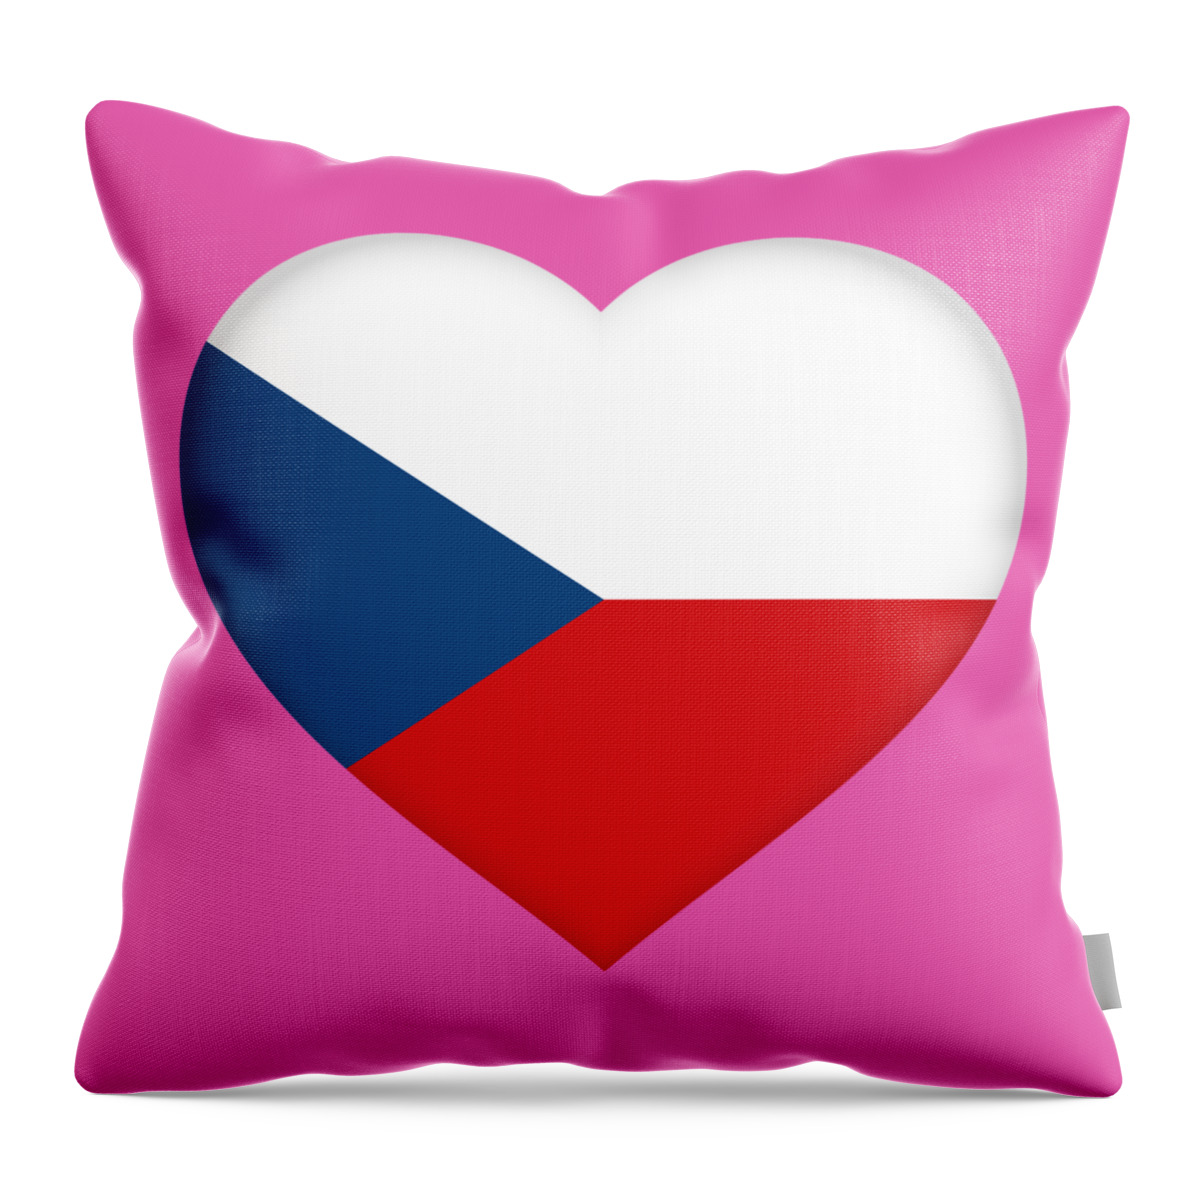 Czech Republic Throw Pillow featuring the digital art Flag of the Czech Republic Heart by Roy Pedersen